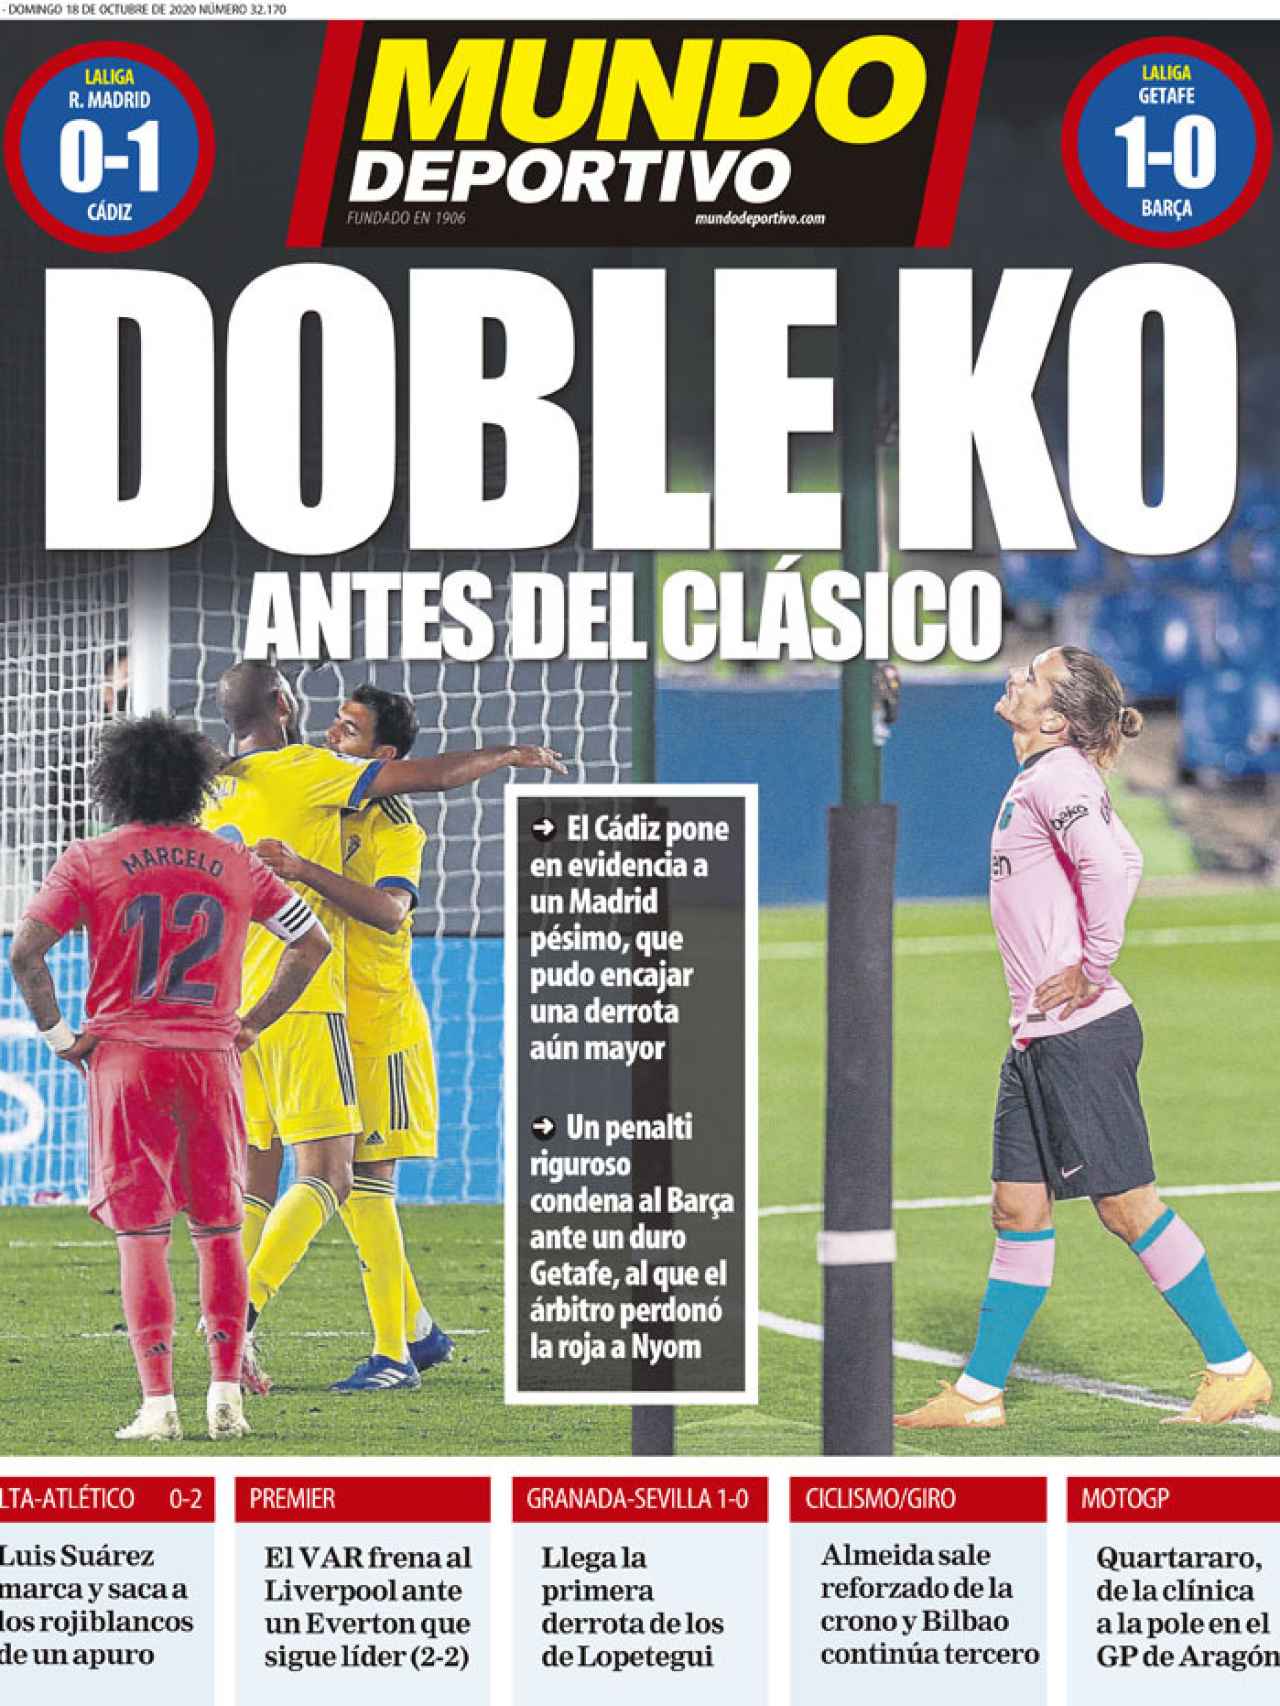 La portada del diario Mundo Deportivo (18/10/2020)